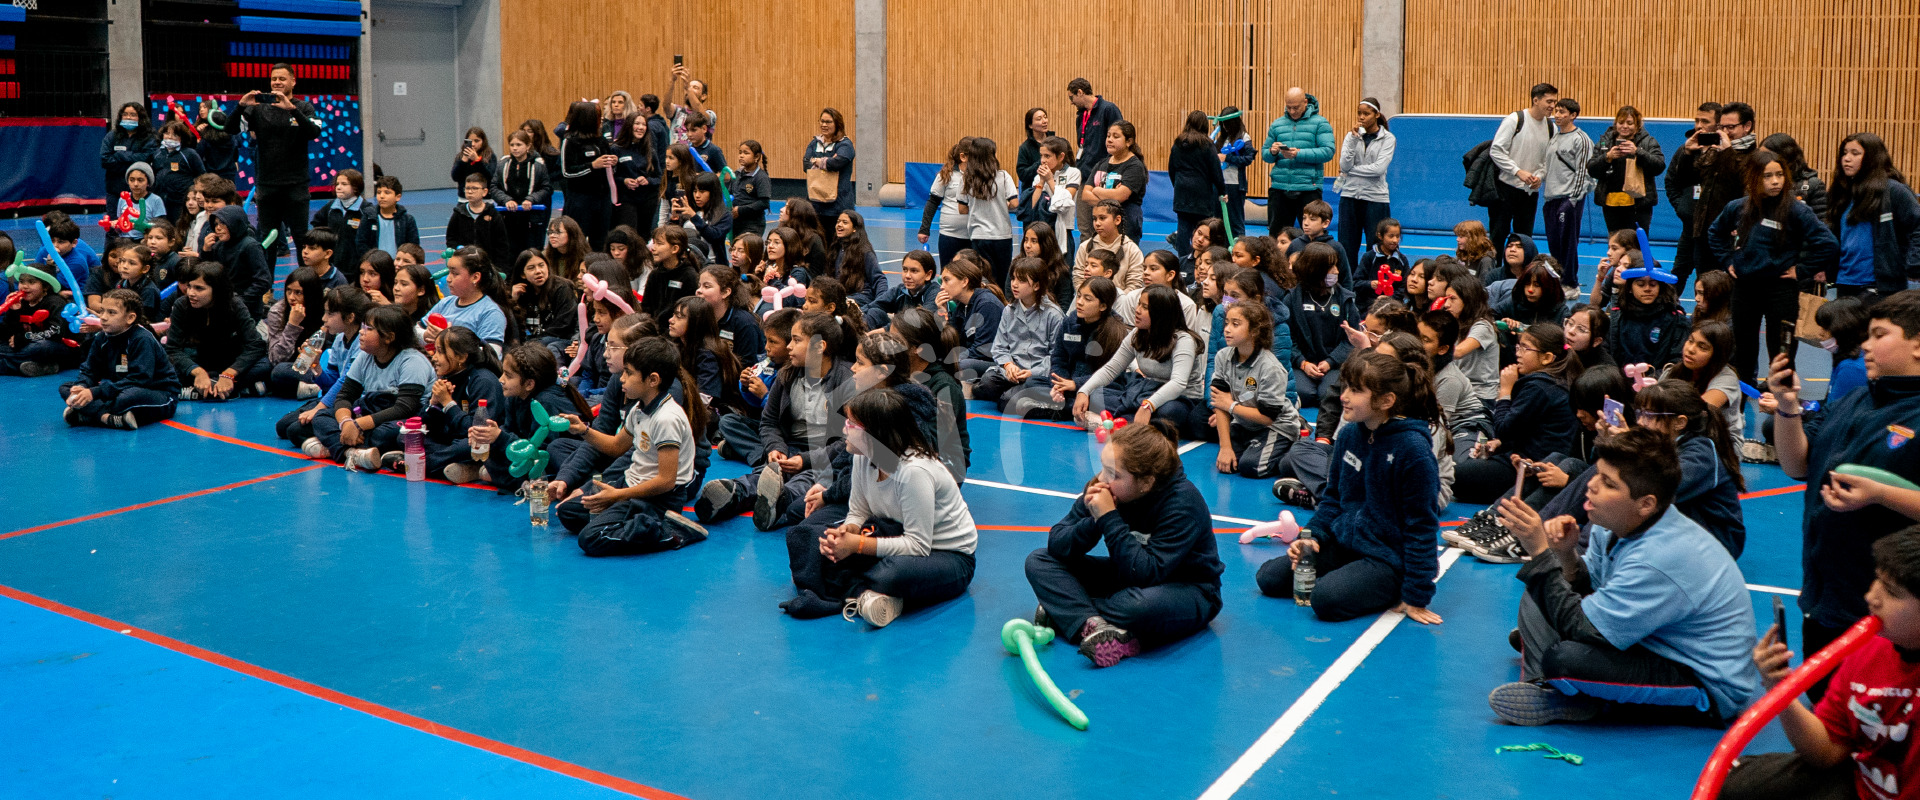 Featured image for “Encuentro de teatro y circo escolar: Más de 200 estudiantes participaron de talleres enfocados en la salud mental”